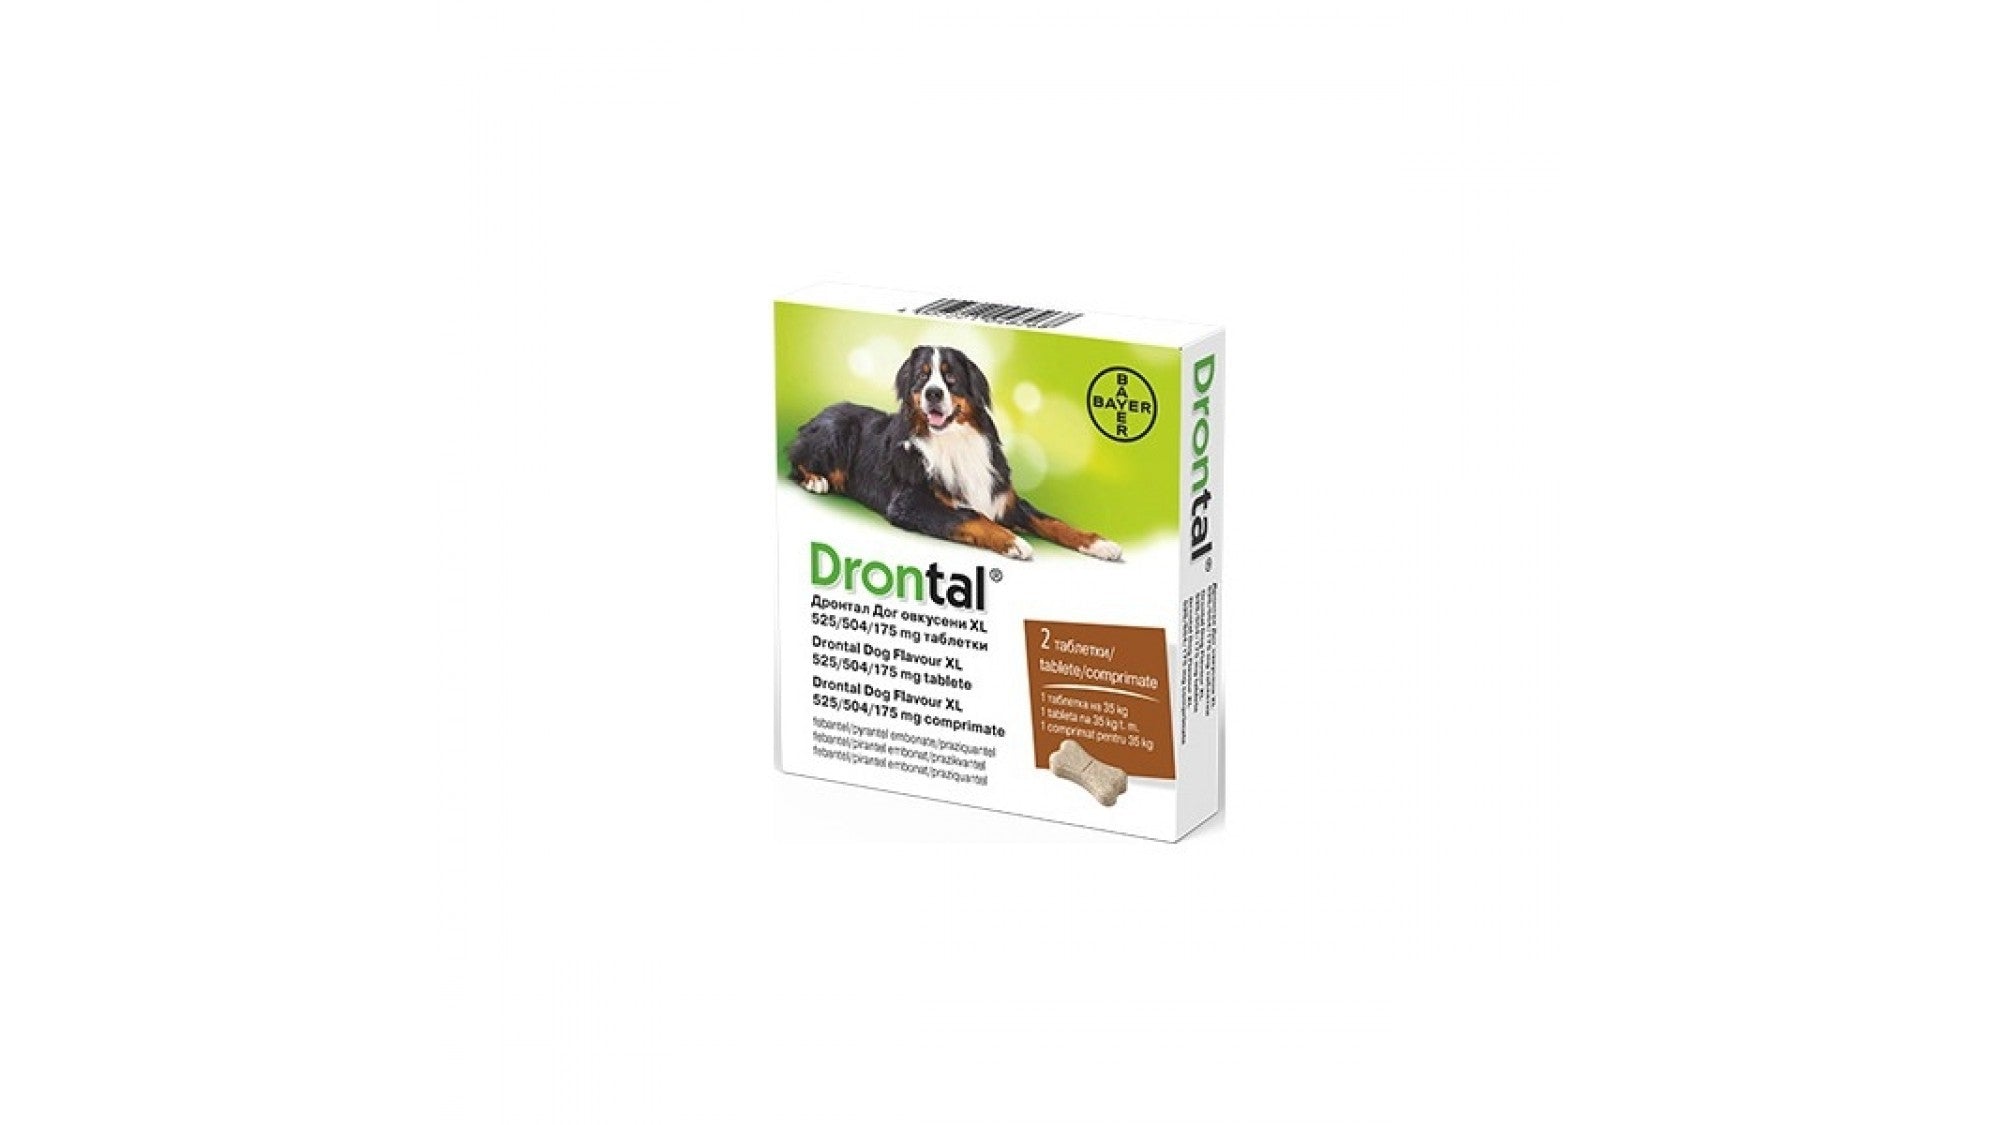 Drontal Dog Flavour XL 525/504/175 MG, pentru caini, cutie x 2 comprimate - ALTVET - Farmacie veterinara - Pet Shop - Cosmetica